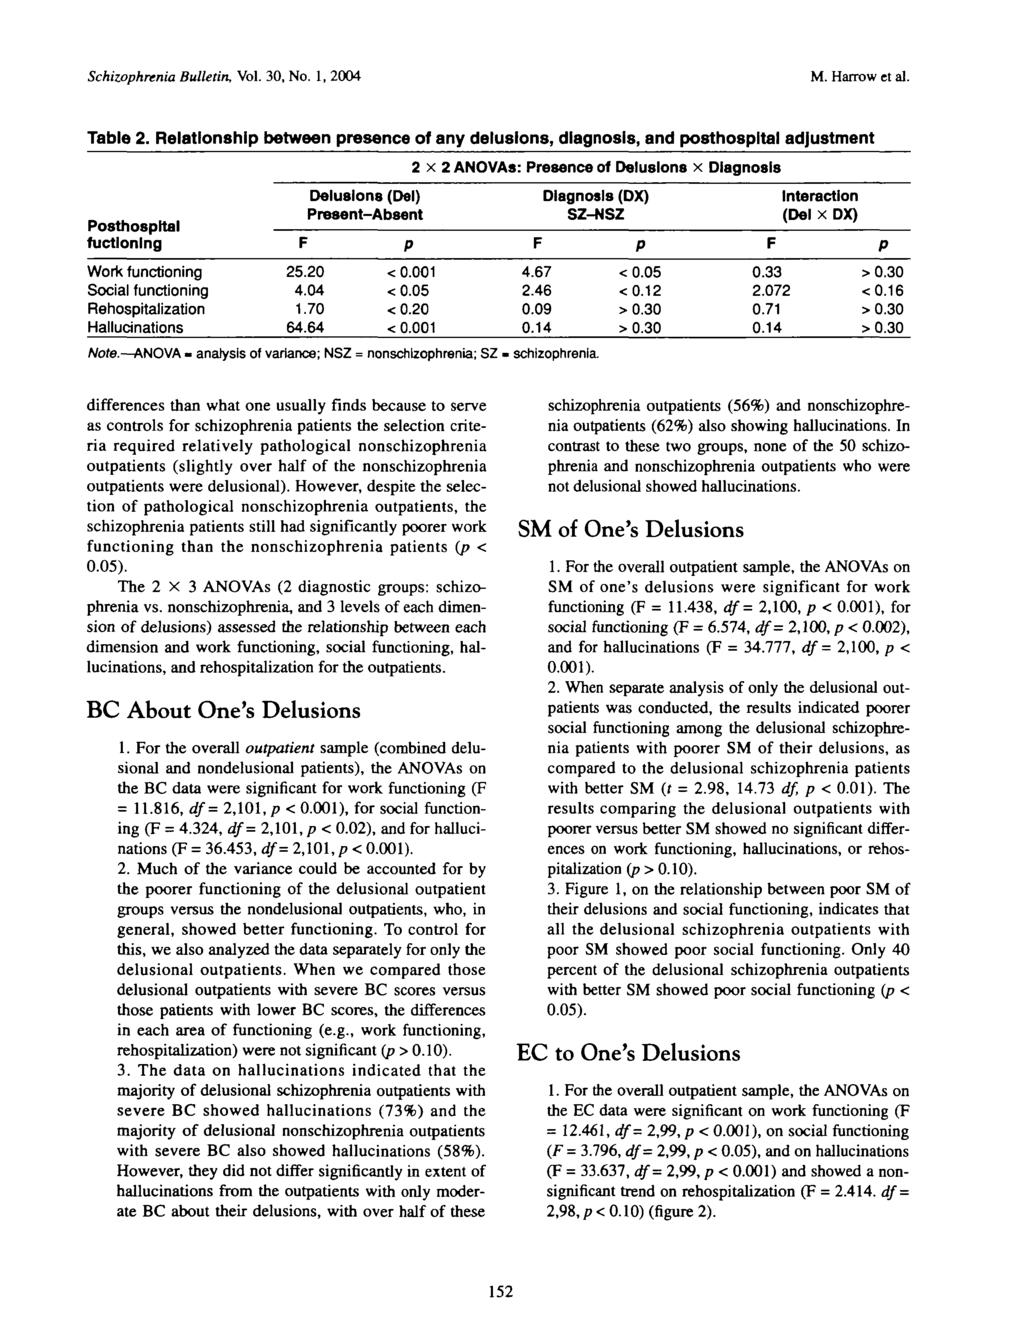 Schizophrenia Bulletin, Vol. 30, No. 1, 2004 M. Harrow et al. Table 2.